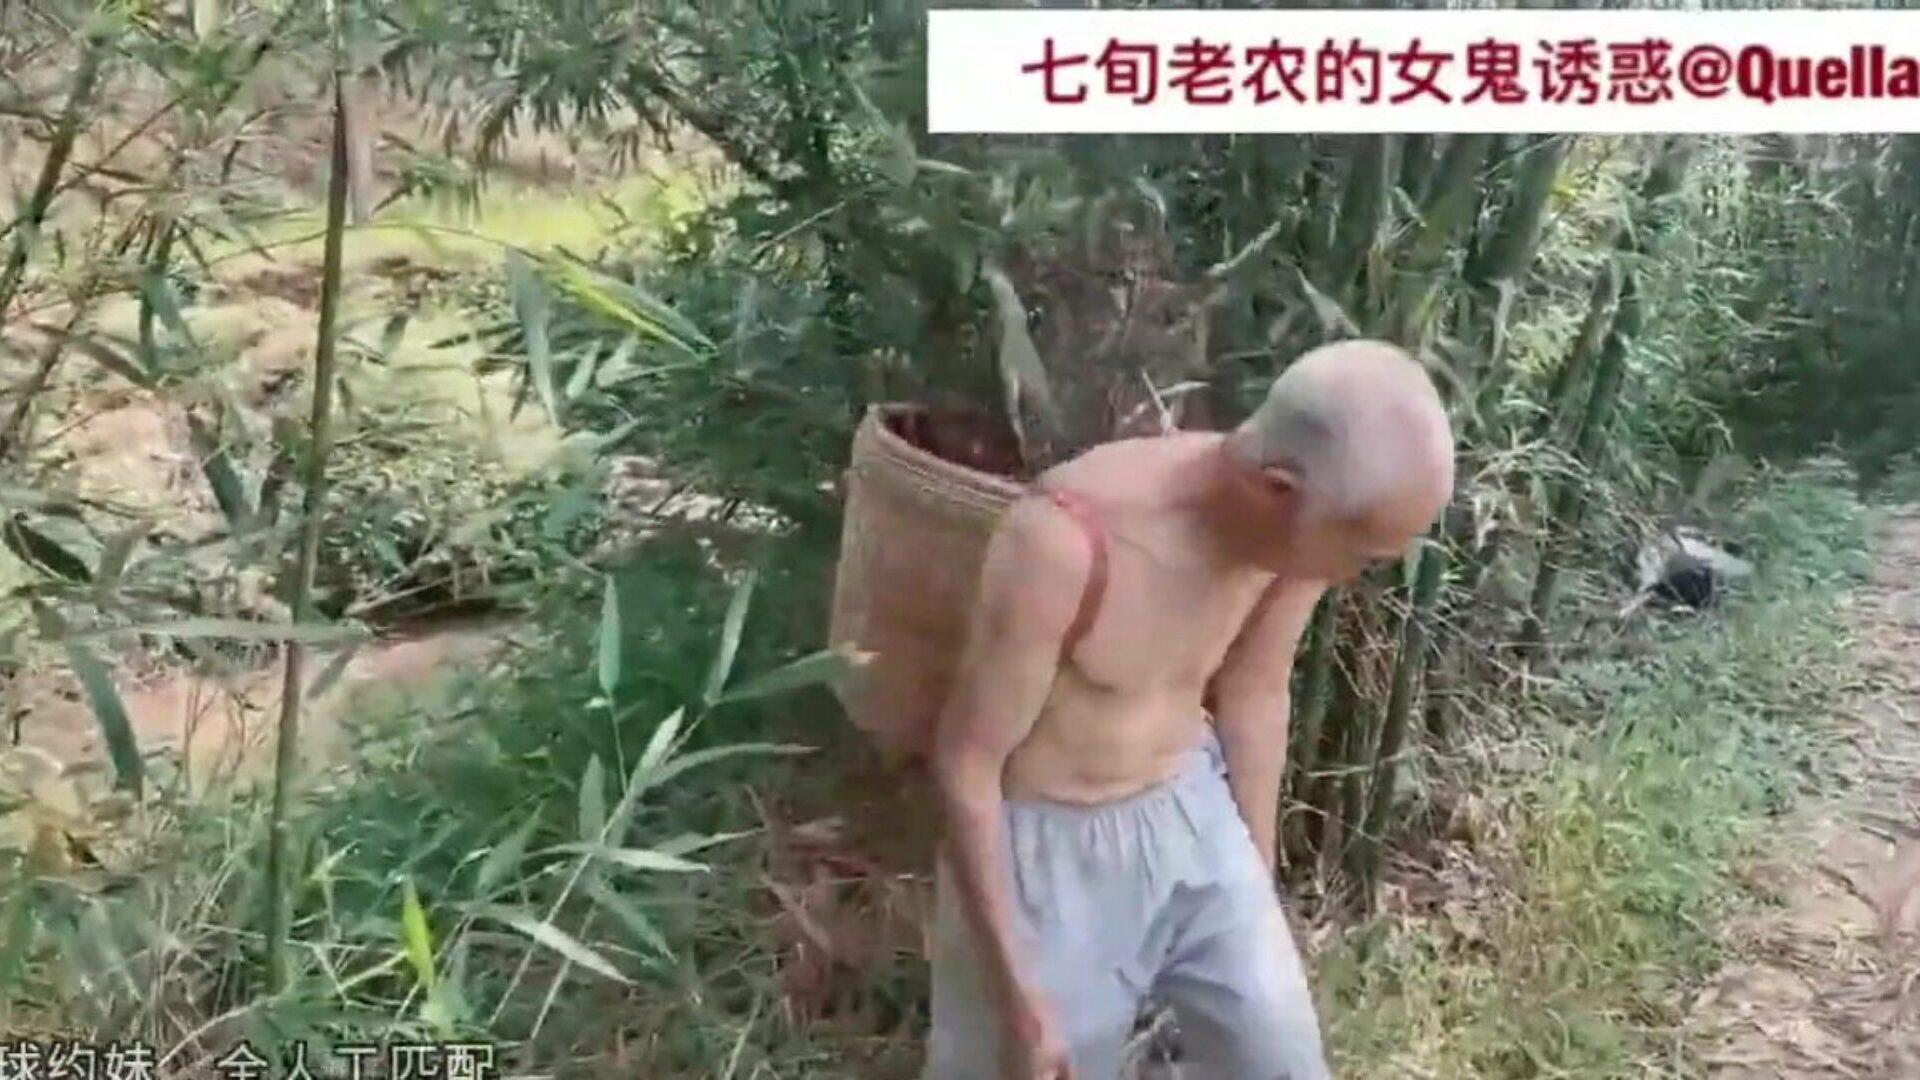 aventura bătrânilor chinezi av70, hd porno 22: xhamster urmărește aventura bătrânilor chinezi episodul av70 pe xhamster, site-ul masiv de tuburi hd romp cu tone de filme porno asiatice gratuite xxx xxx și vechi asiatice